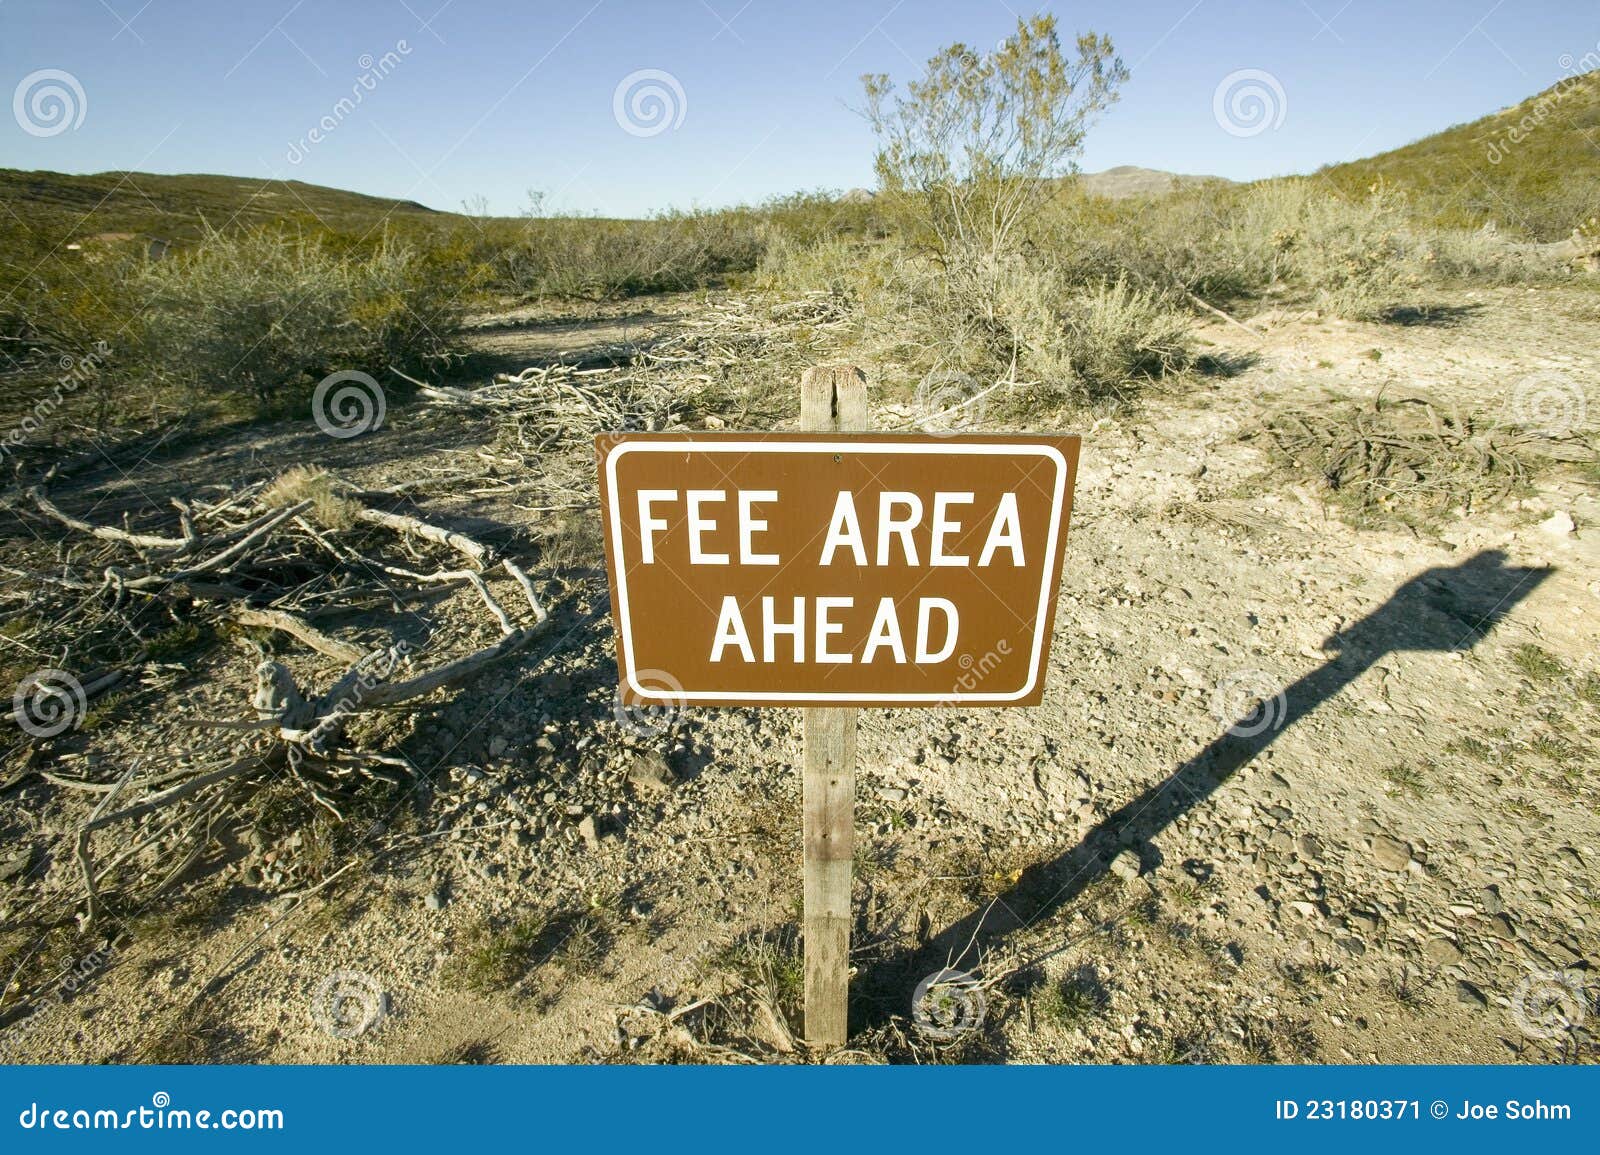 fee area sign